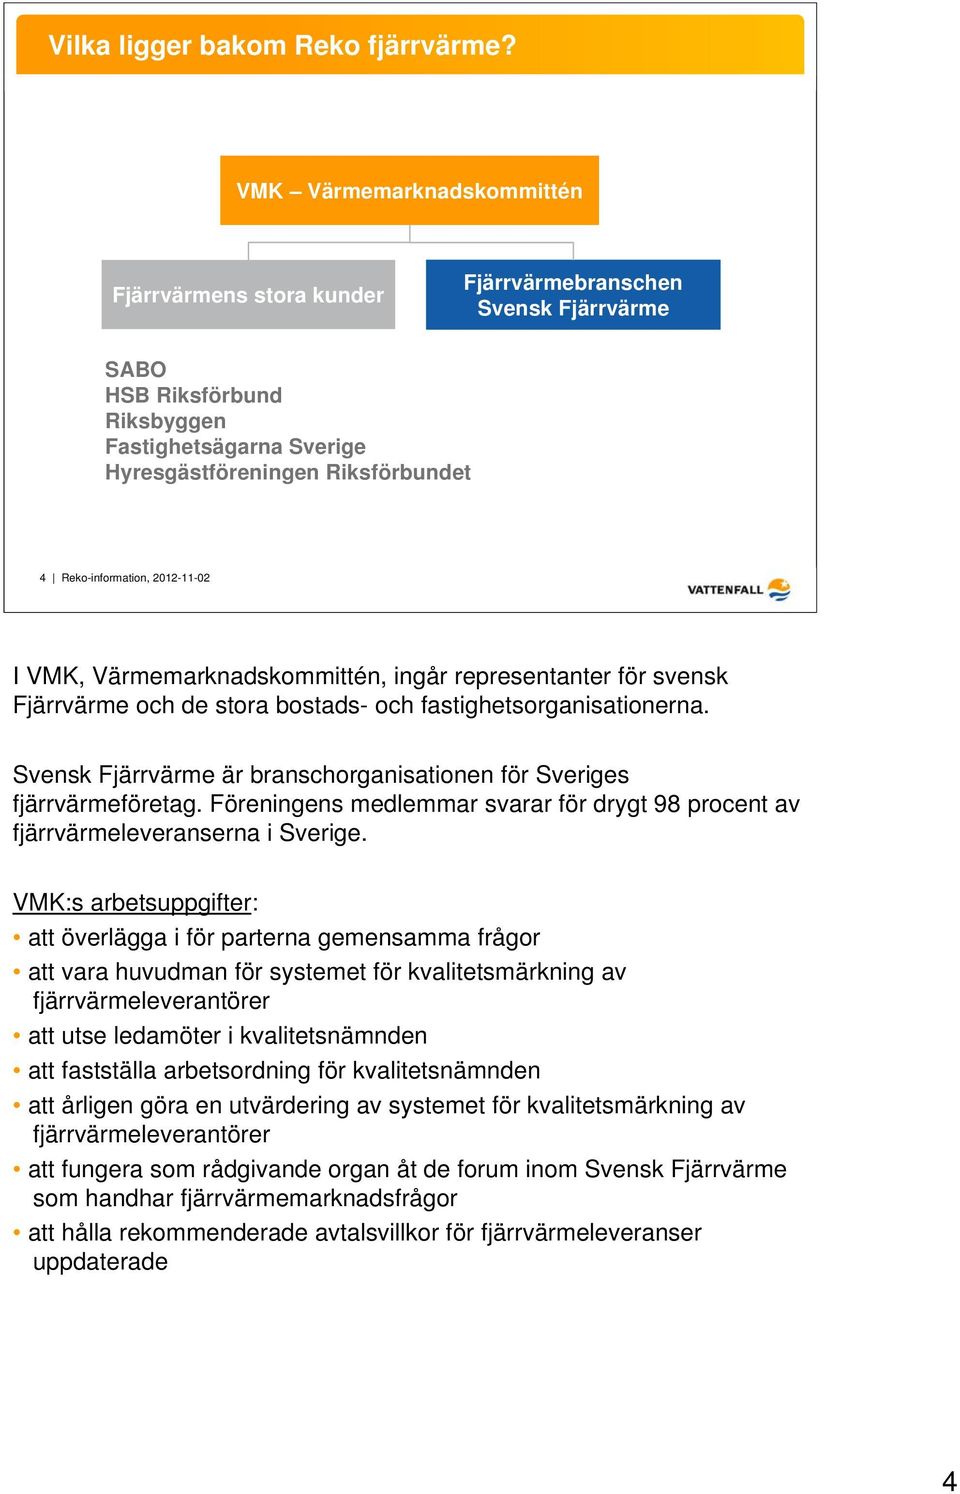 Reko-information, 2012-11-02 I VMK, Värmemarknadskommittén, ingår representanter för svensk Fjärrvärme och de stora bostads- och fastighetsorganisationerna.